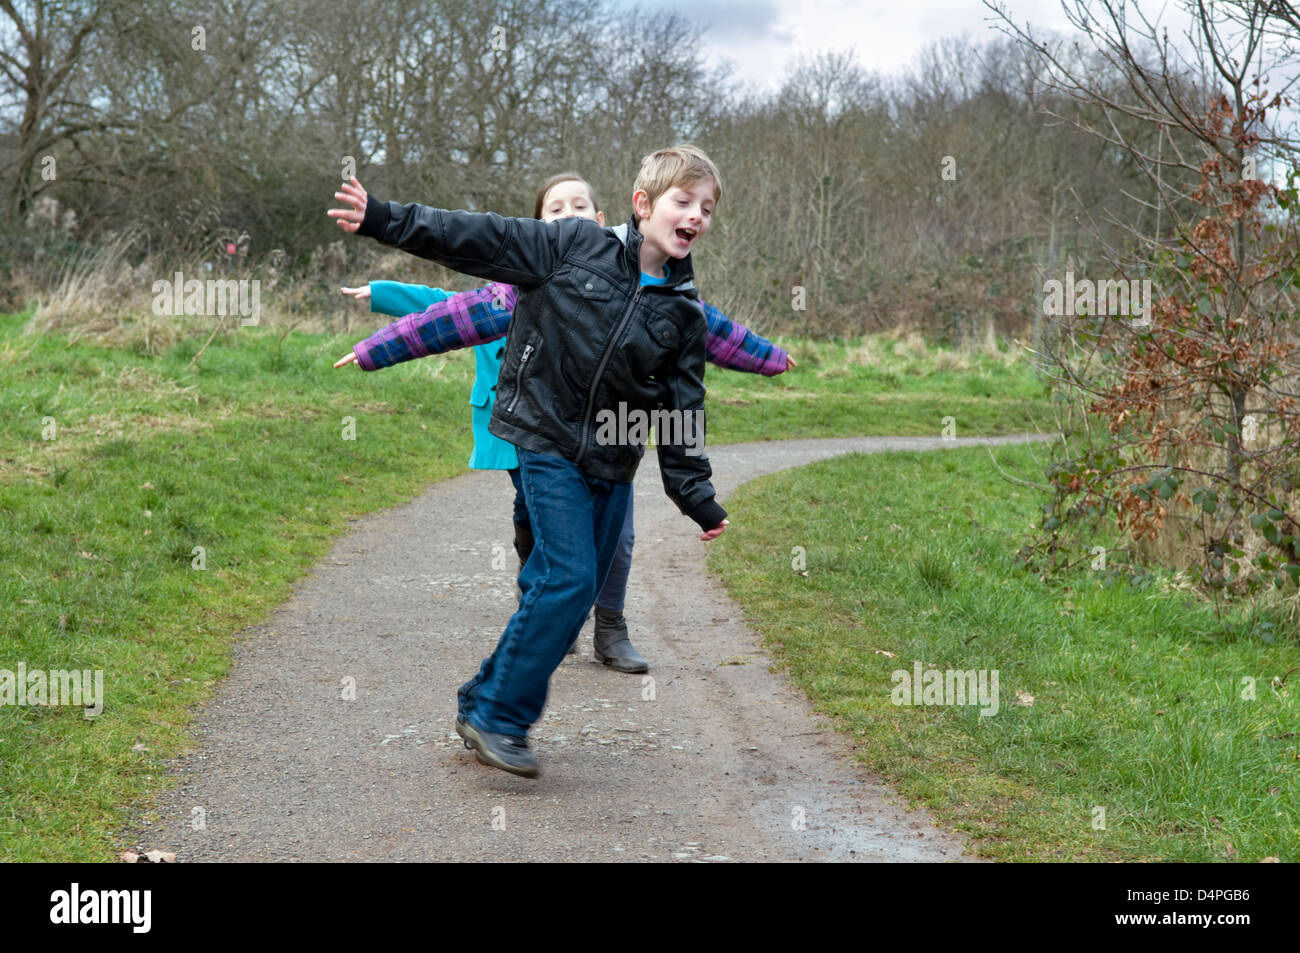 Kinder laufen so dass Flugzeug (oder Flugzeug) Formen und Spaß im park Stockfoto